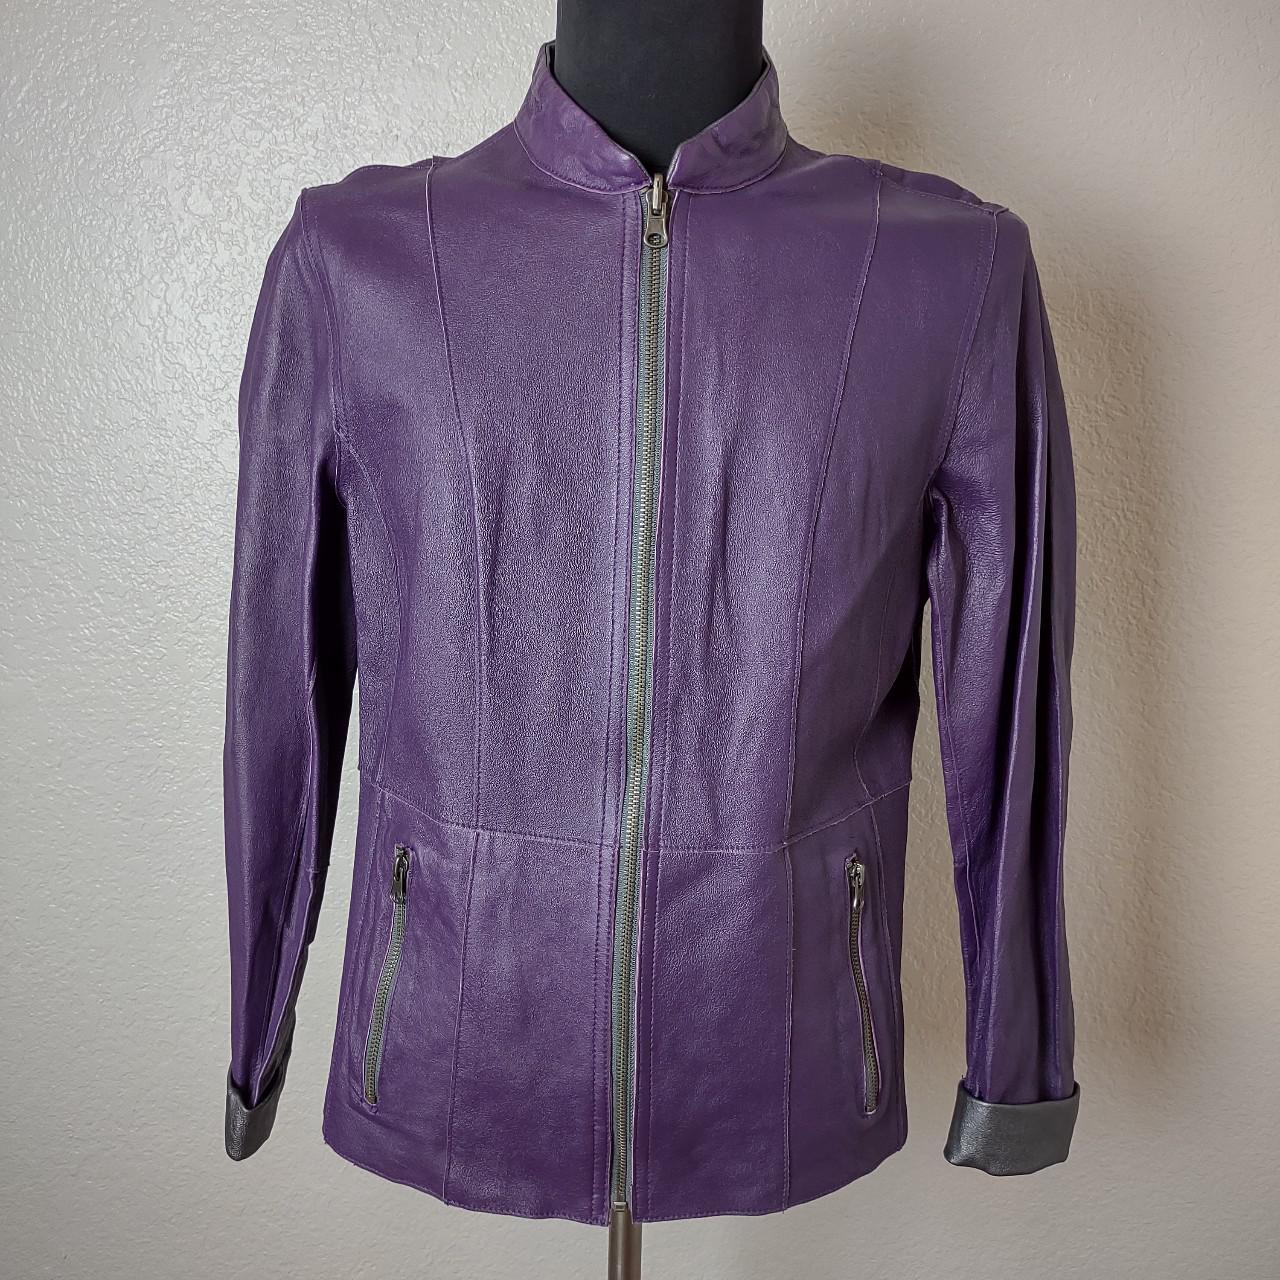 Reversible Purple Silver Moto Leather S Jacket Y2K... - Depop